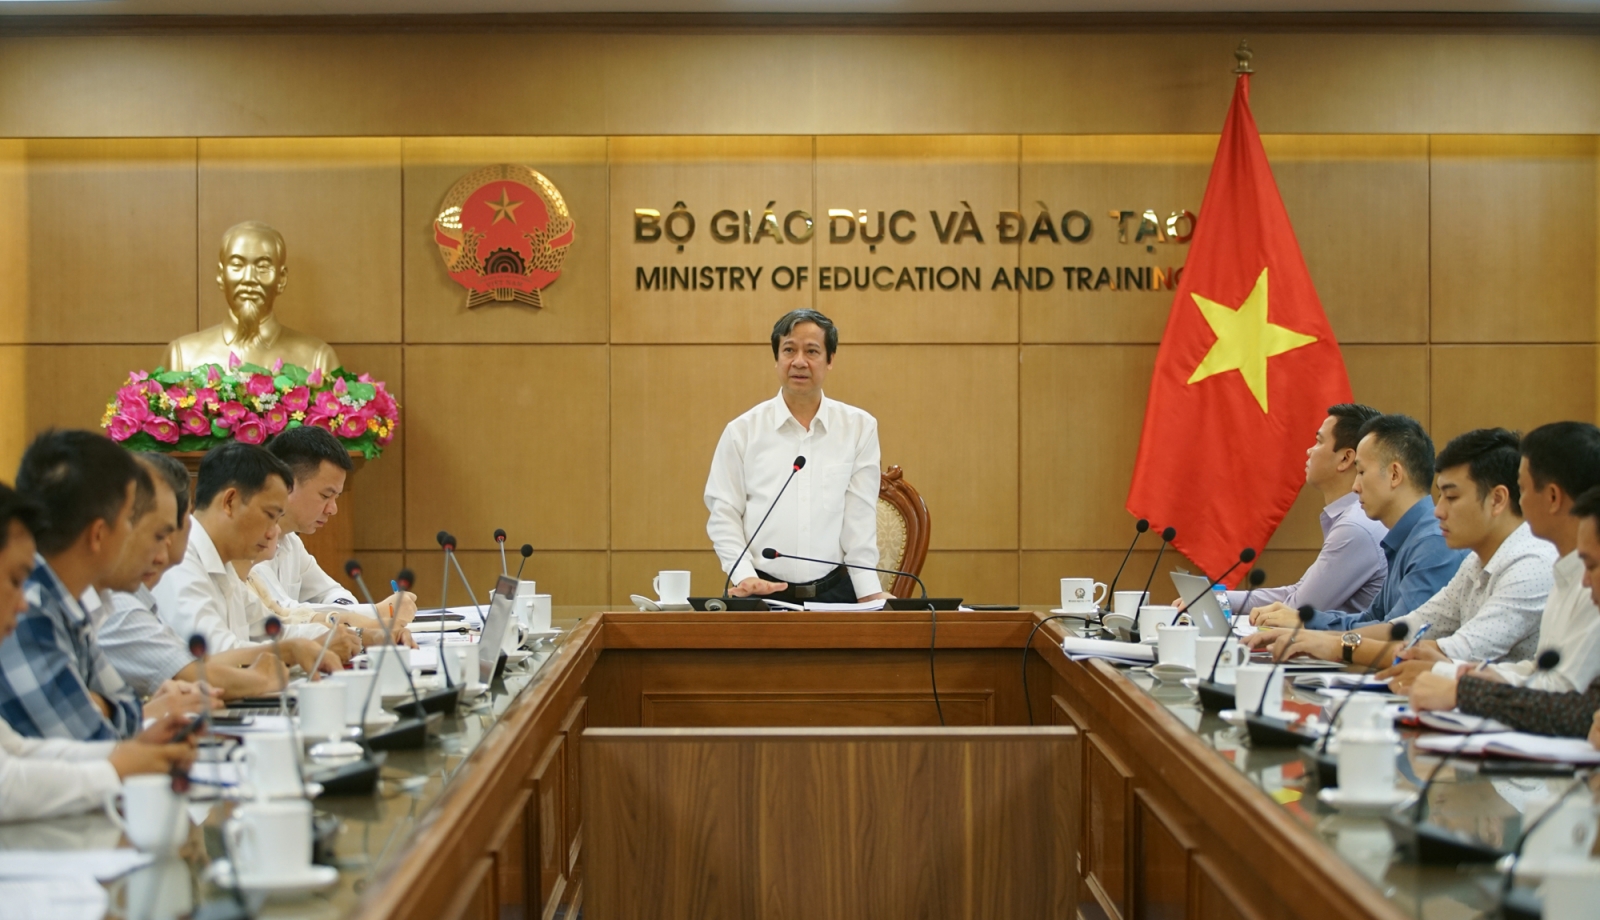 Bộ trưởng Nguyễn Kim Sơn: Truyền thông đóng vai trò quan trọng trong đổi mới Giáo dục